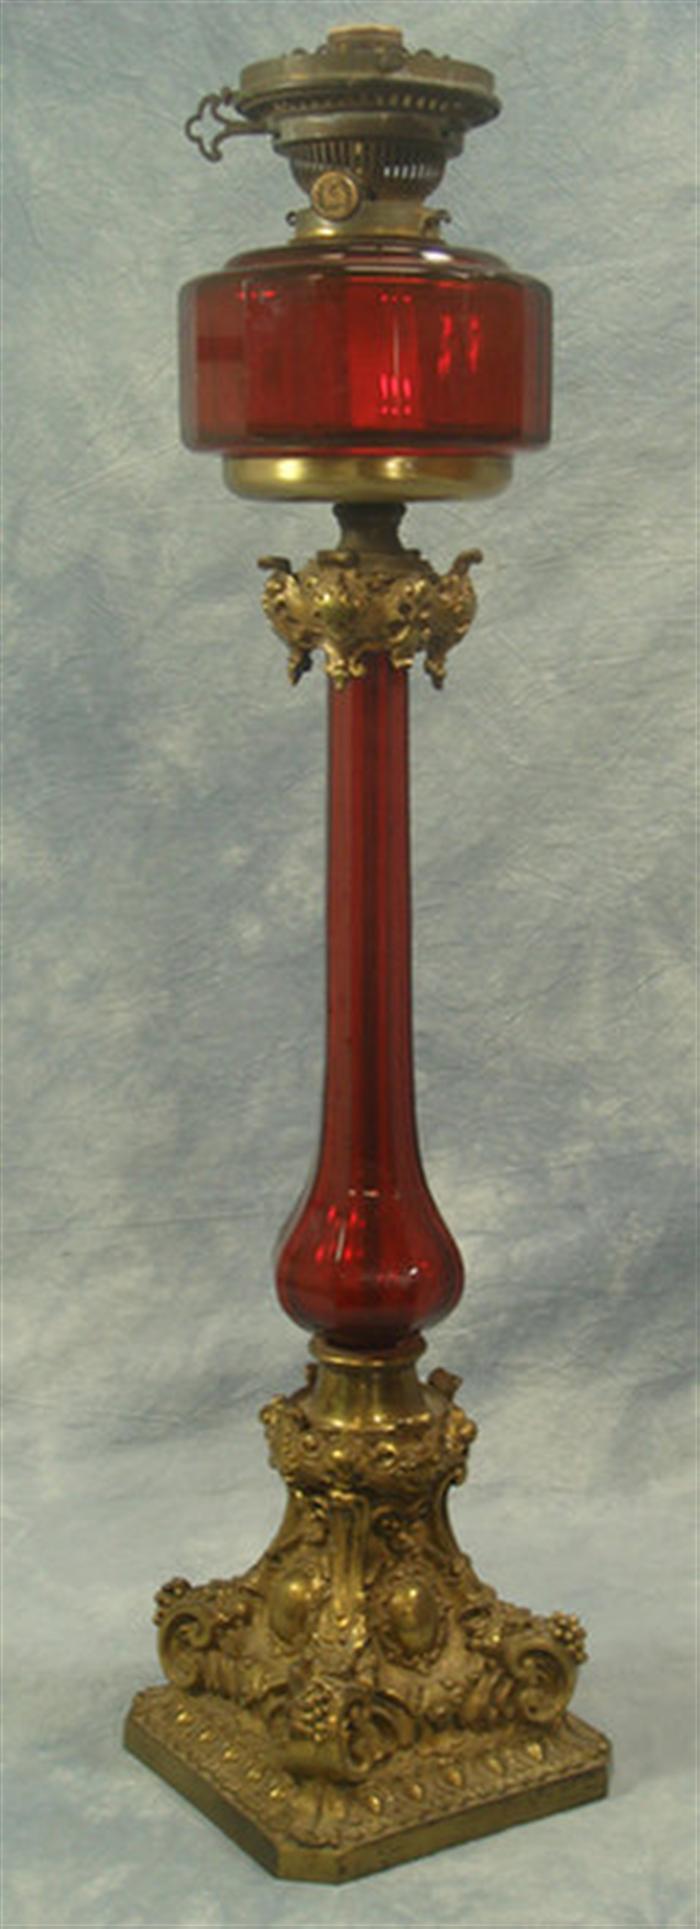 Ruby glass & brass banquet lamp,